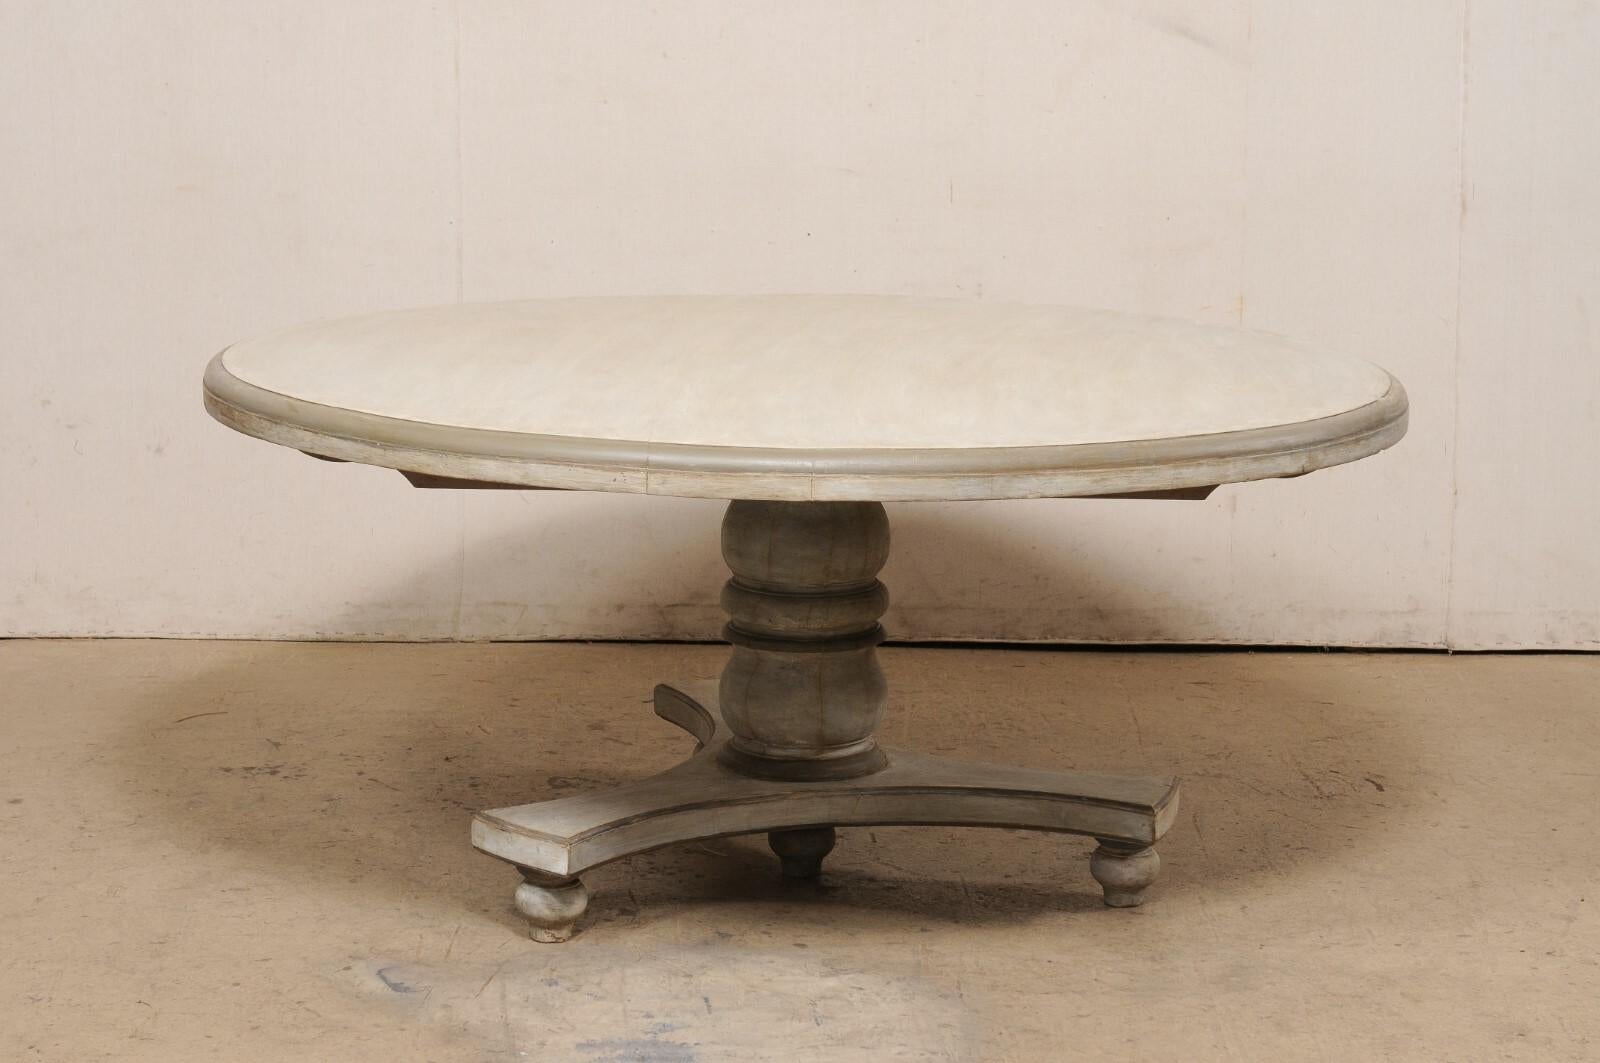 Table de salle à manger ronde à piédestal en teck peint vintage. Cette table de salle à manger originaire de l'Inde présente un plateau de forme ronde (2,75